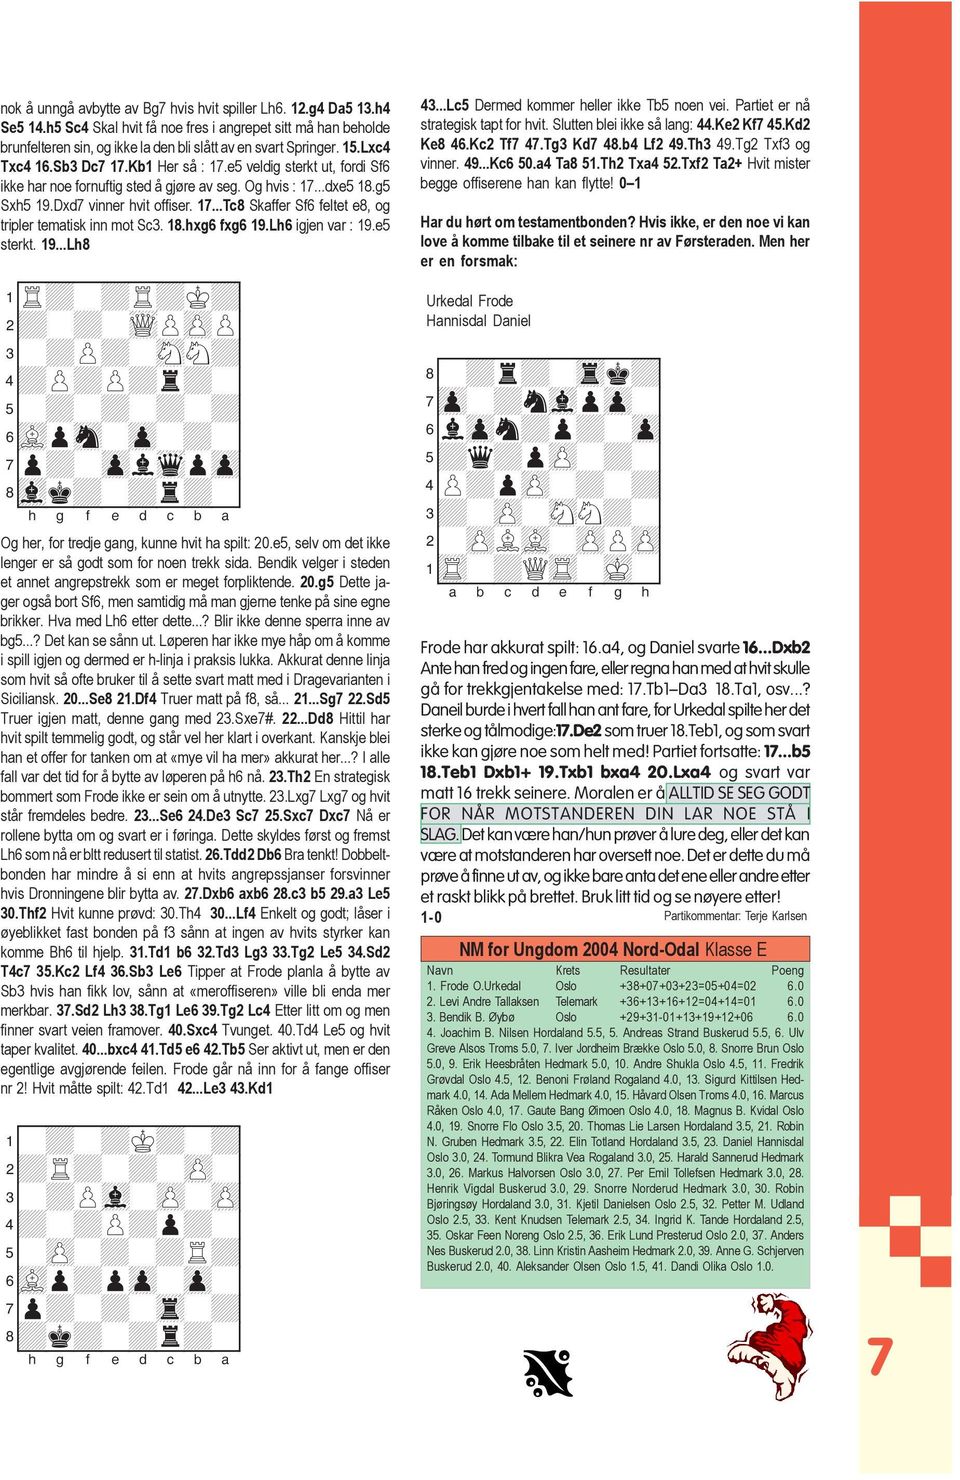 18.hxg6 fxg6 19.Lh6 igjen var : 19.e5 sterkt. 19...Lh8 Og her, for tredje gang, kunne hvit ha spilt: 20.e5, selv om det ikke lenger er så godt som for noen trekk sida.